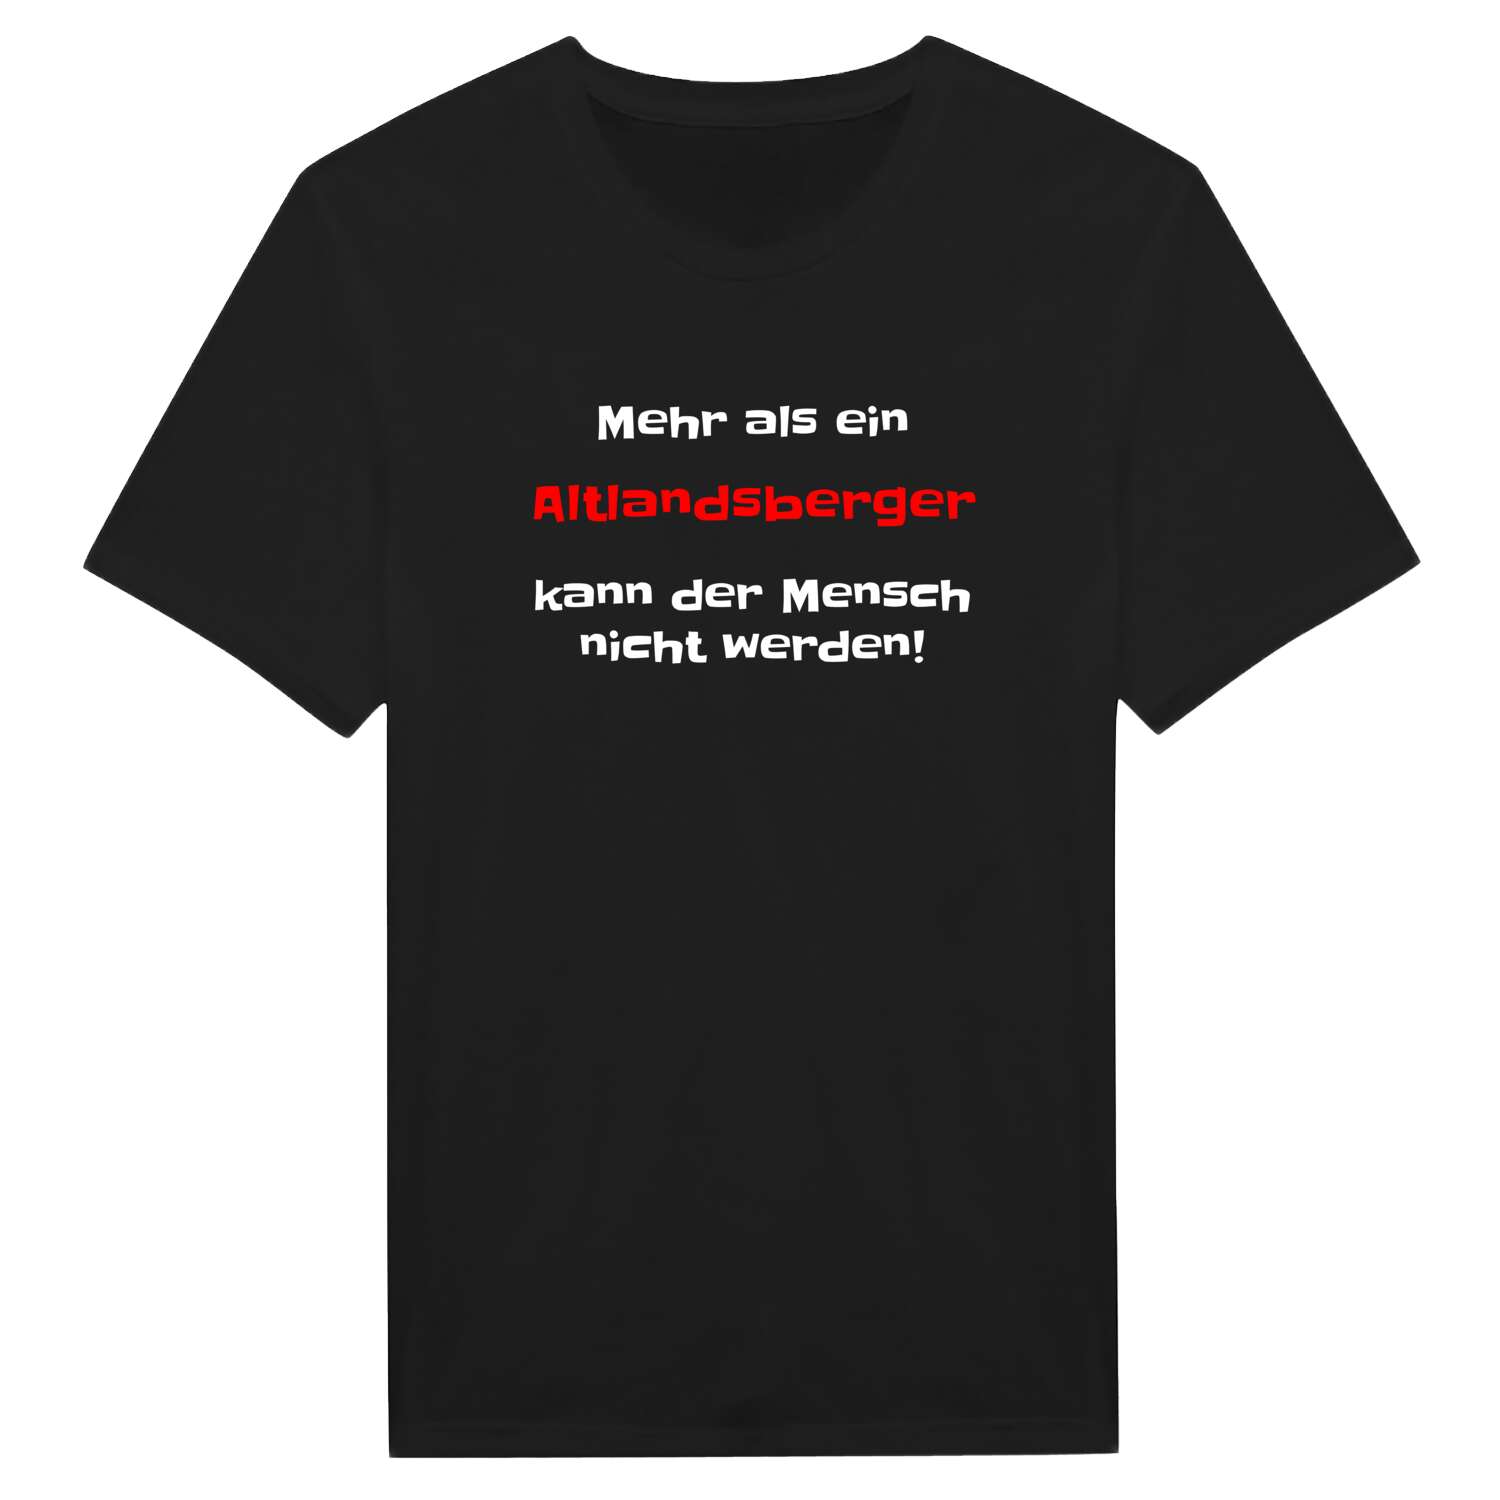 Altlandsberg T-Shirt »Mehr als ein«